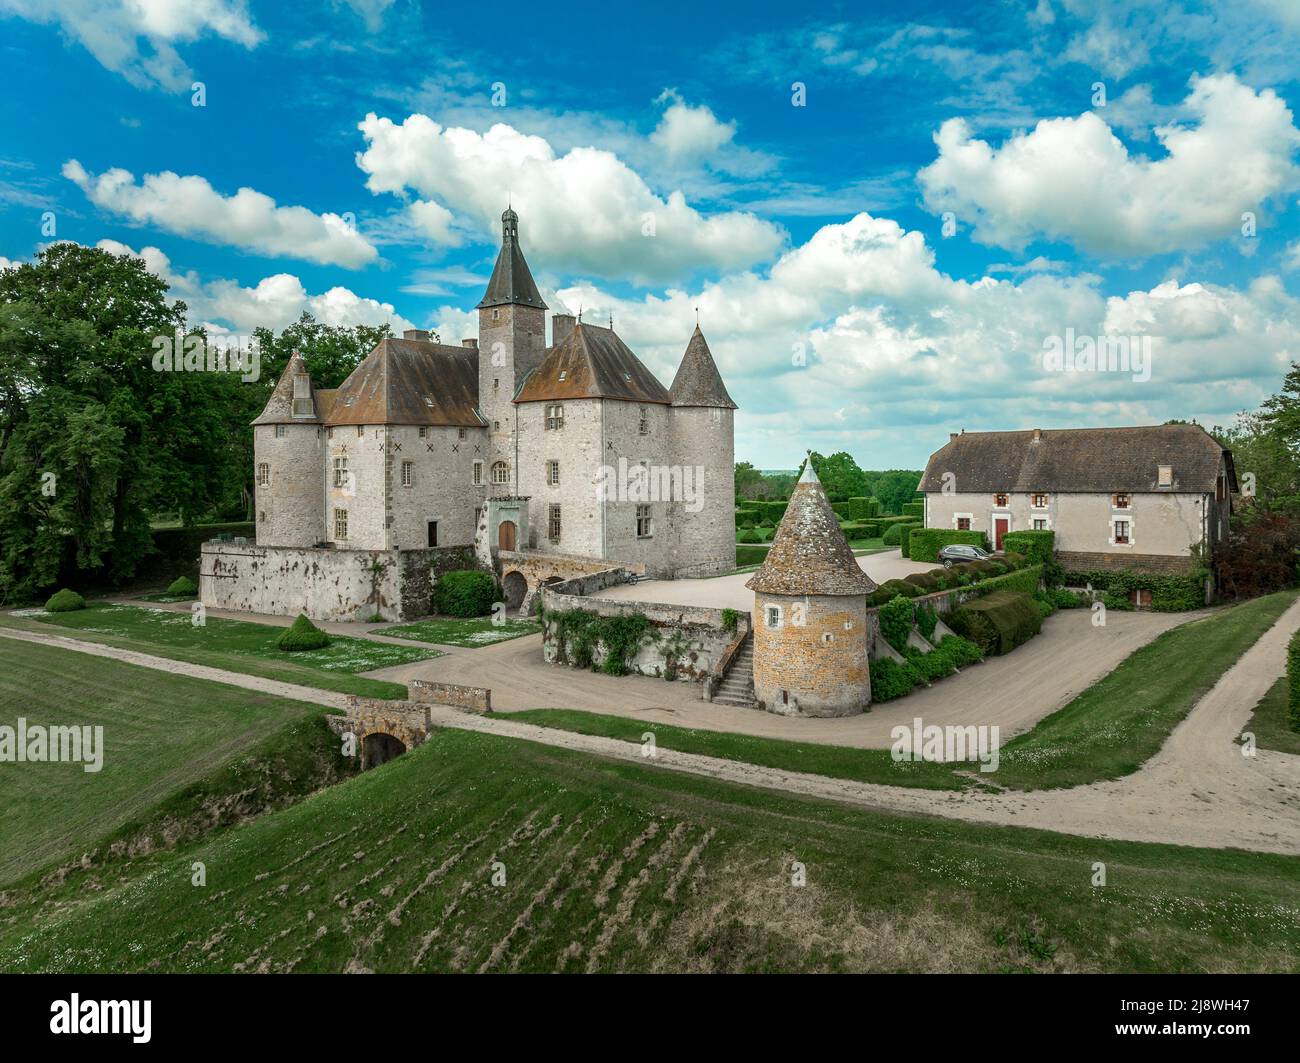 Luftaufnahme des Chateau de Beauvoir restauriertes mittelalterliches französisches Schloss mit Brücke, Türmen, gepflegtem Rasen und Garten Stockfoto